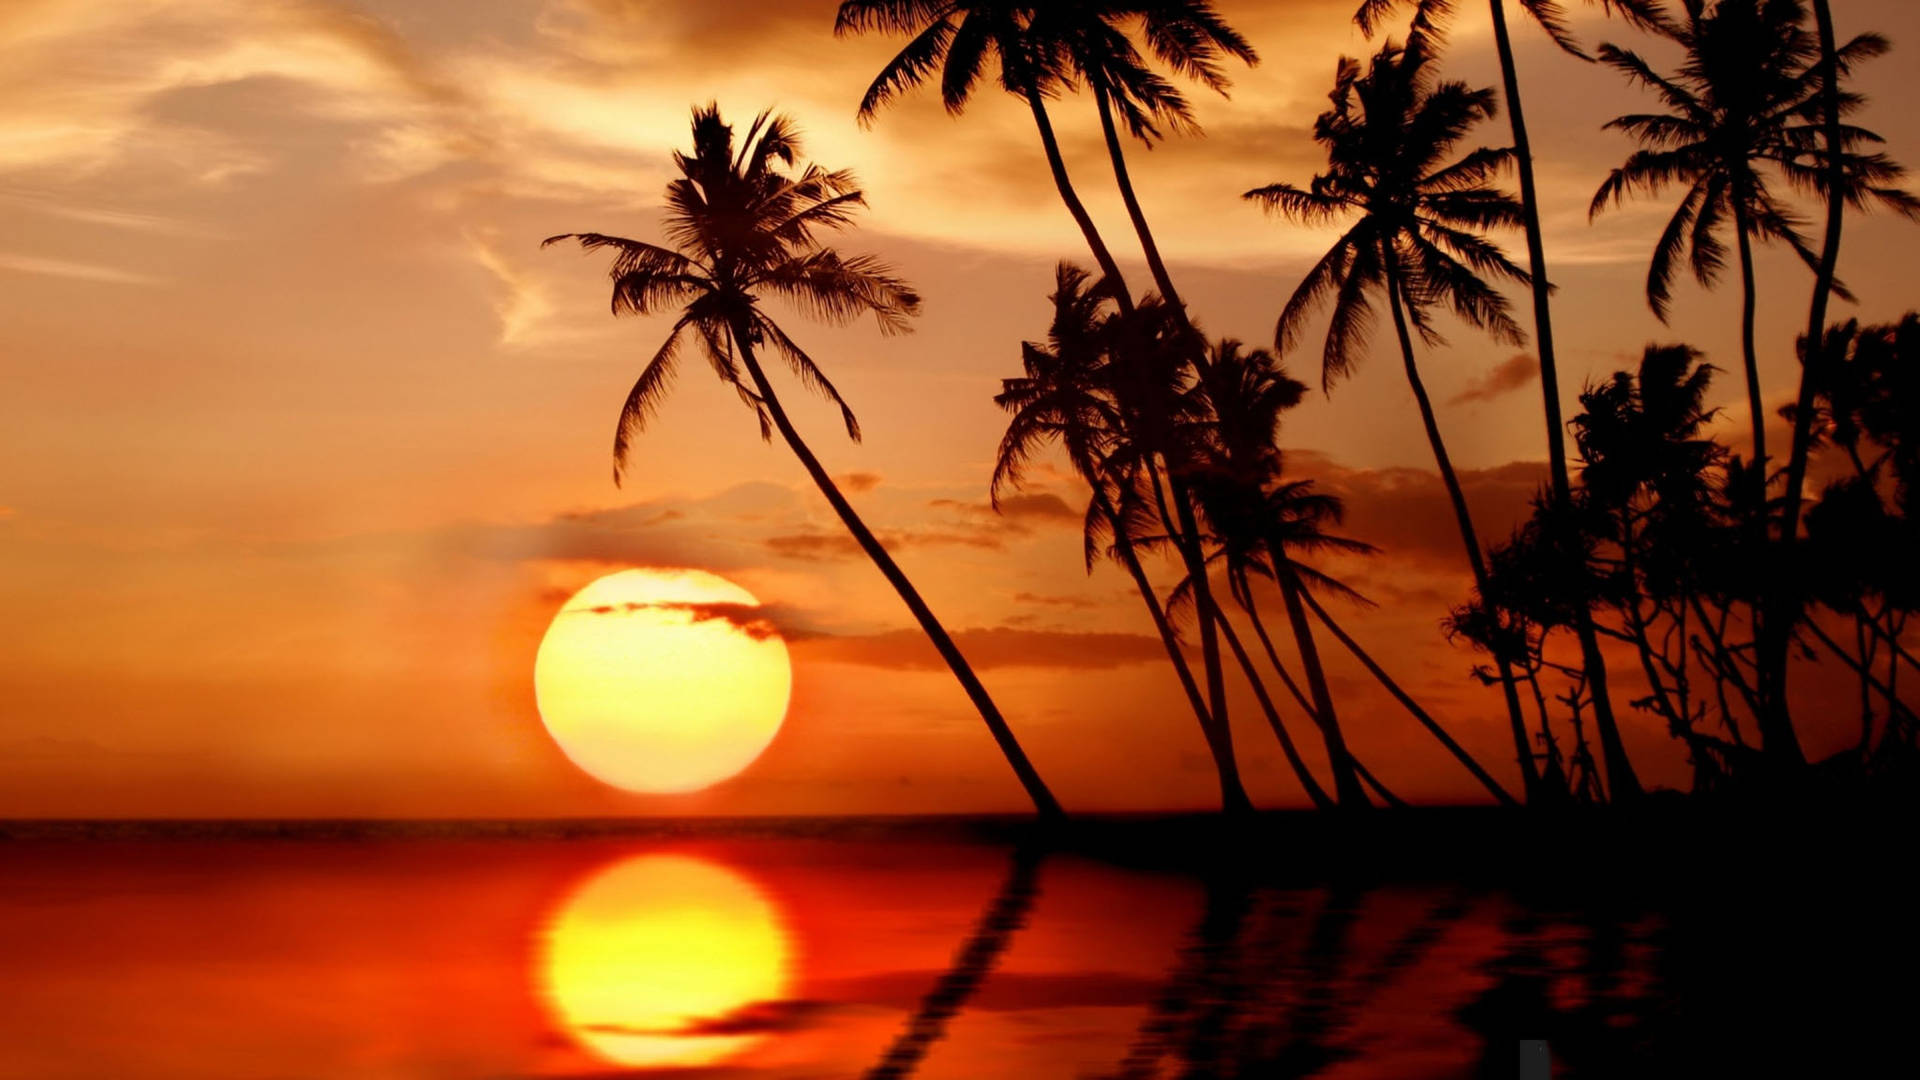 Sri Lanka Beautiful Sunset Background